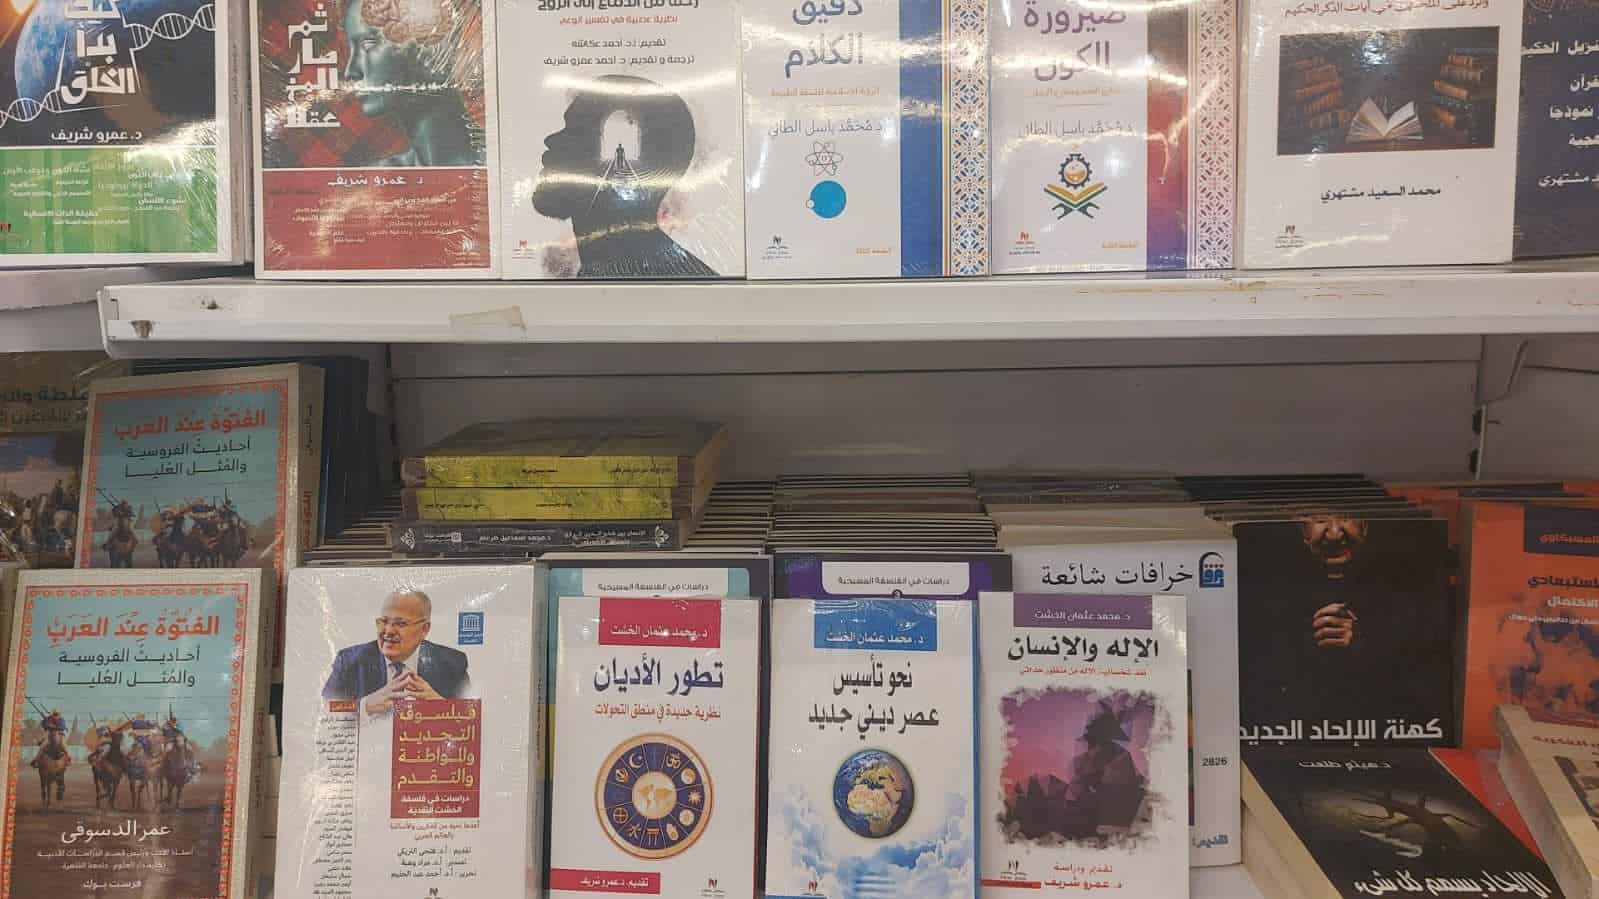 أحدث مؤلفات رئيس جامعة القاهرة في معرض المدينة المنورة للكتاب بالمملكة العربية السعودية